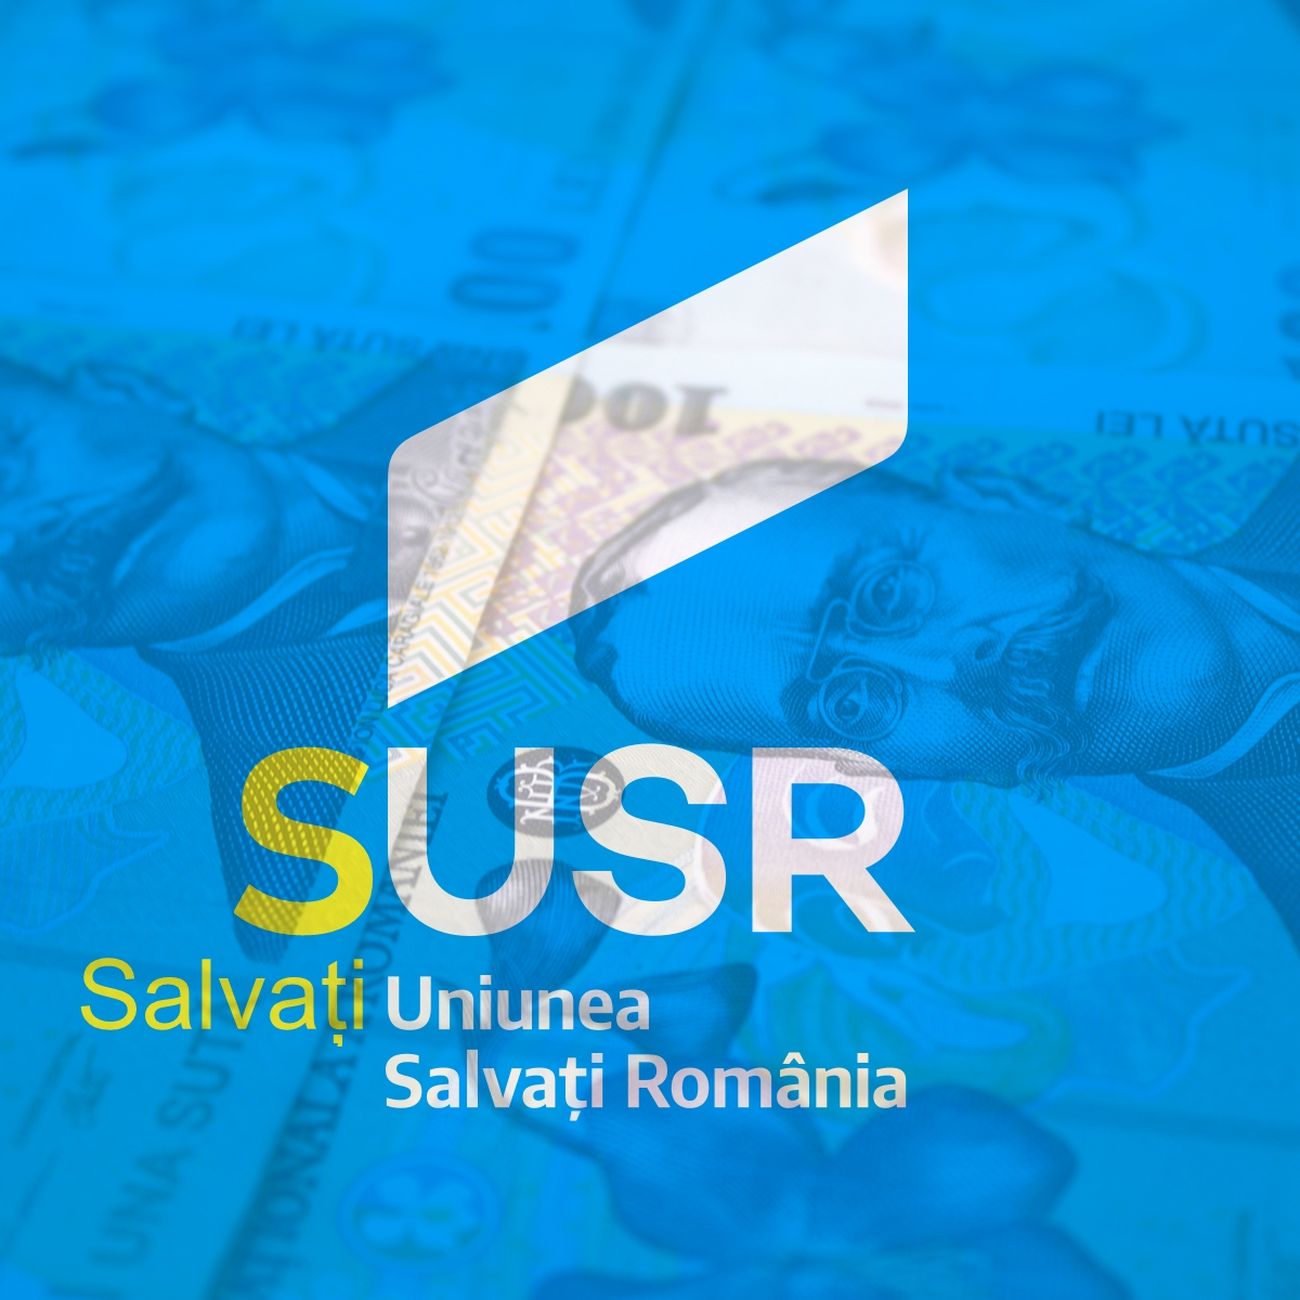 Cine salvează uniunea care vrea să salveze România?